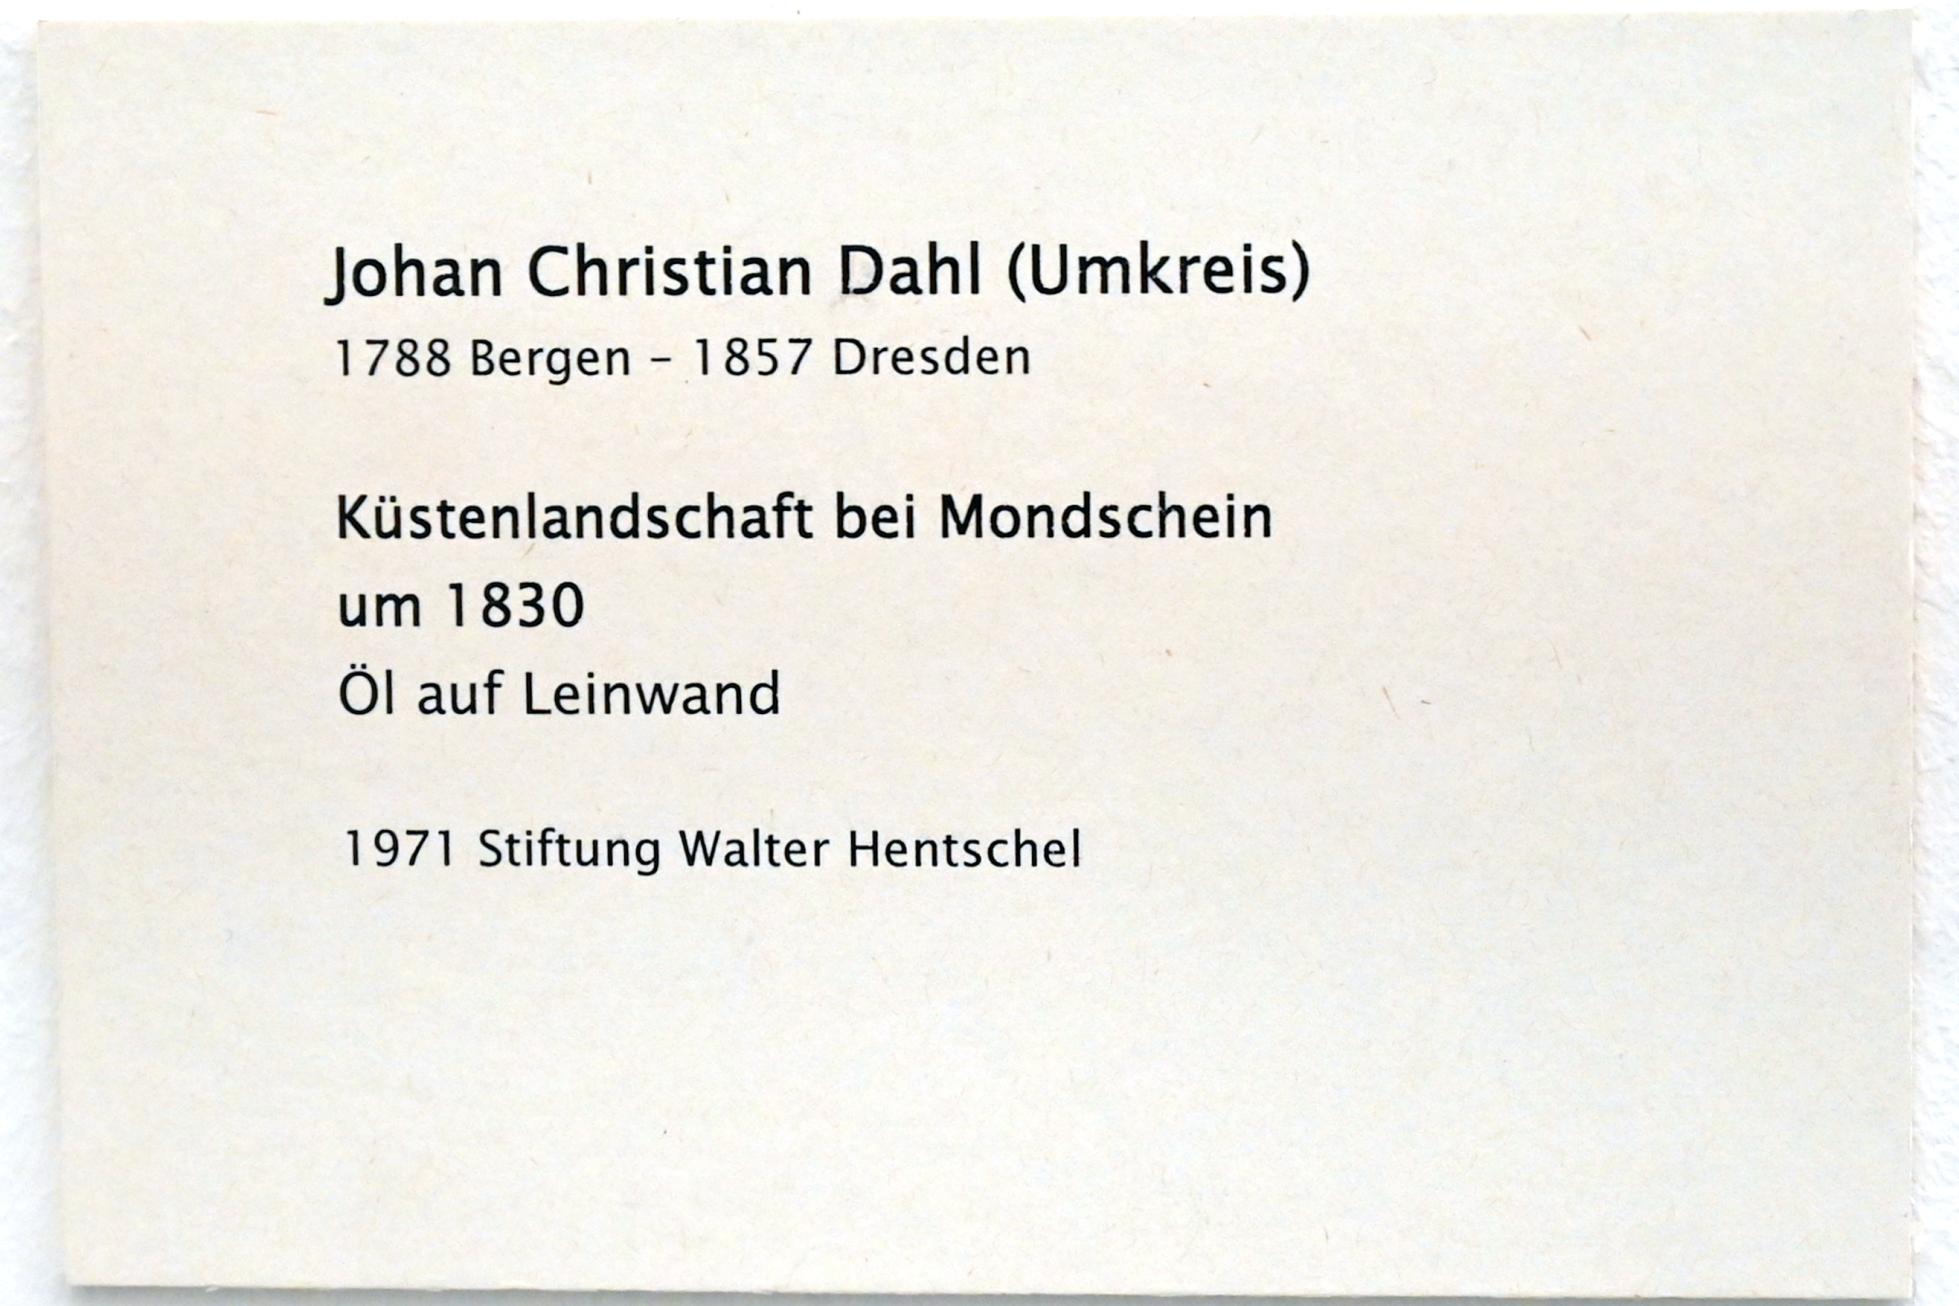 Johan Christian Clausen Dahl (Umkreis) (1830), Küstenlandschaft bei Mondschein, Zwickau, Kunstsammlungen, Zeit der Empfindsamkeit, um 1830, Bild 2/2